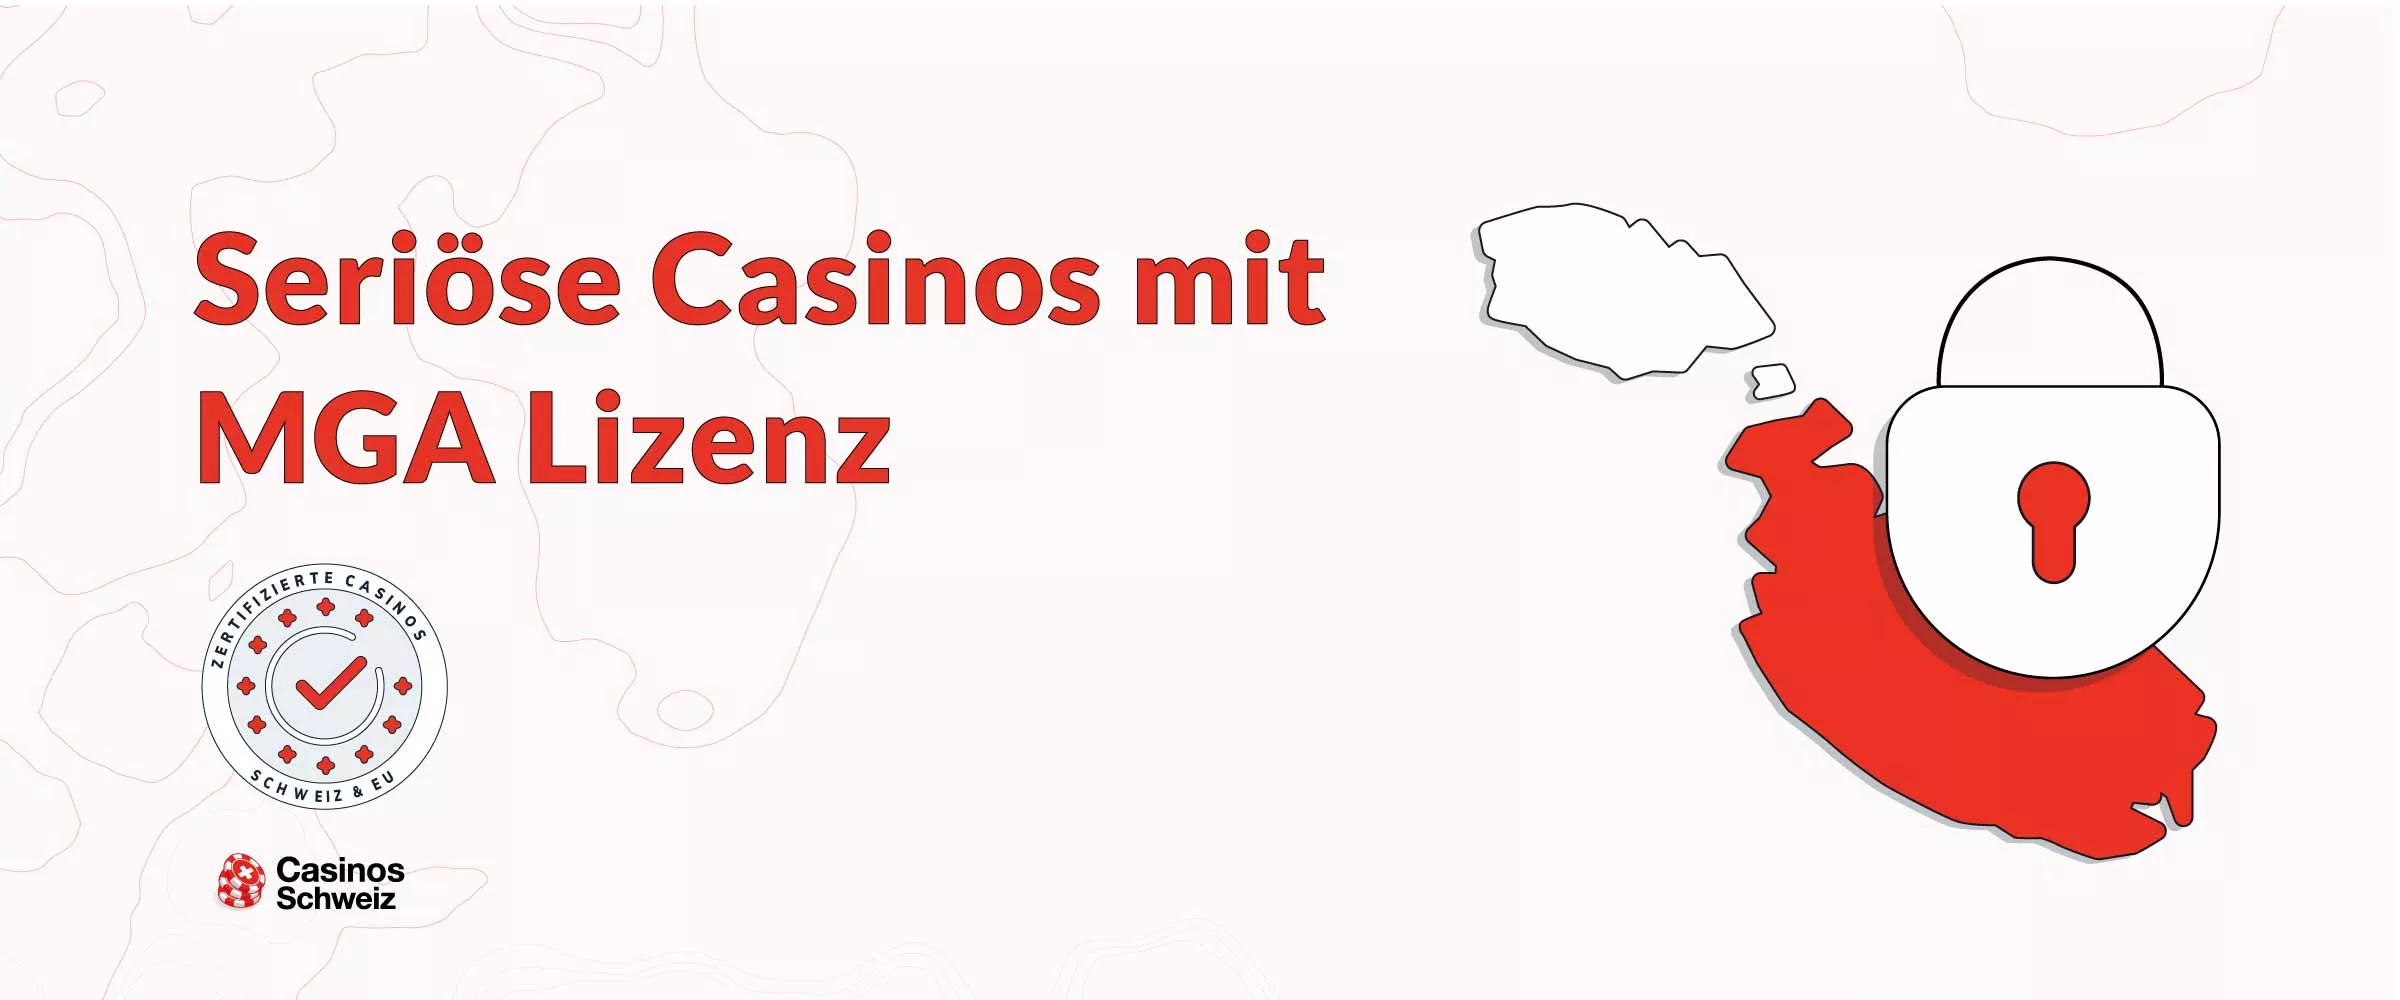 seriöse Casino Österreich erklärt